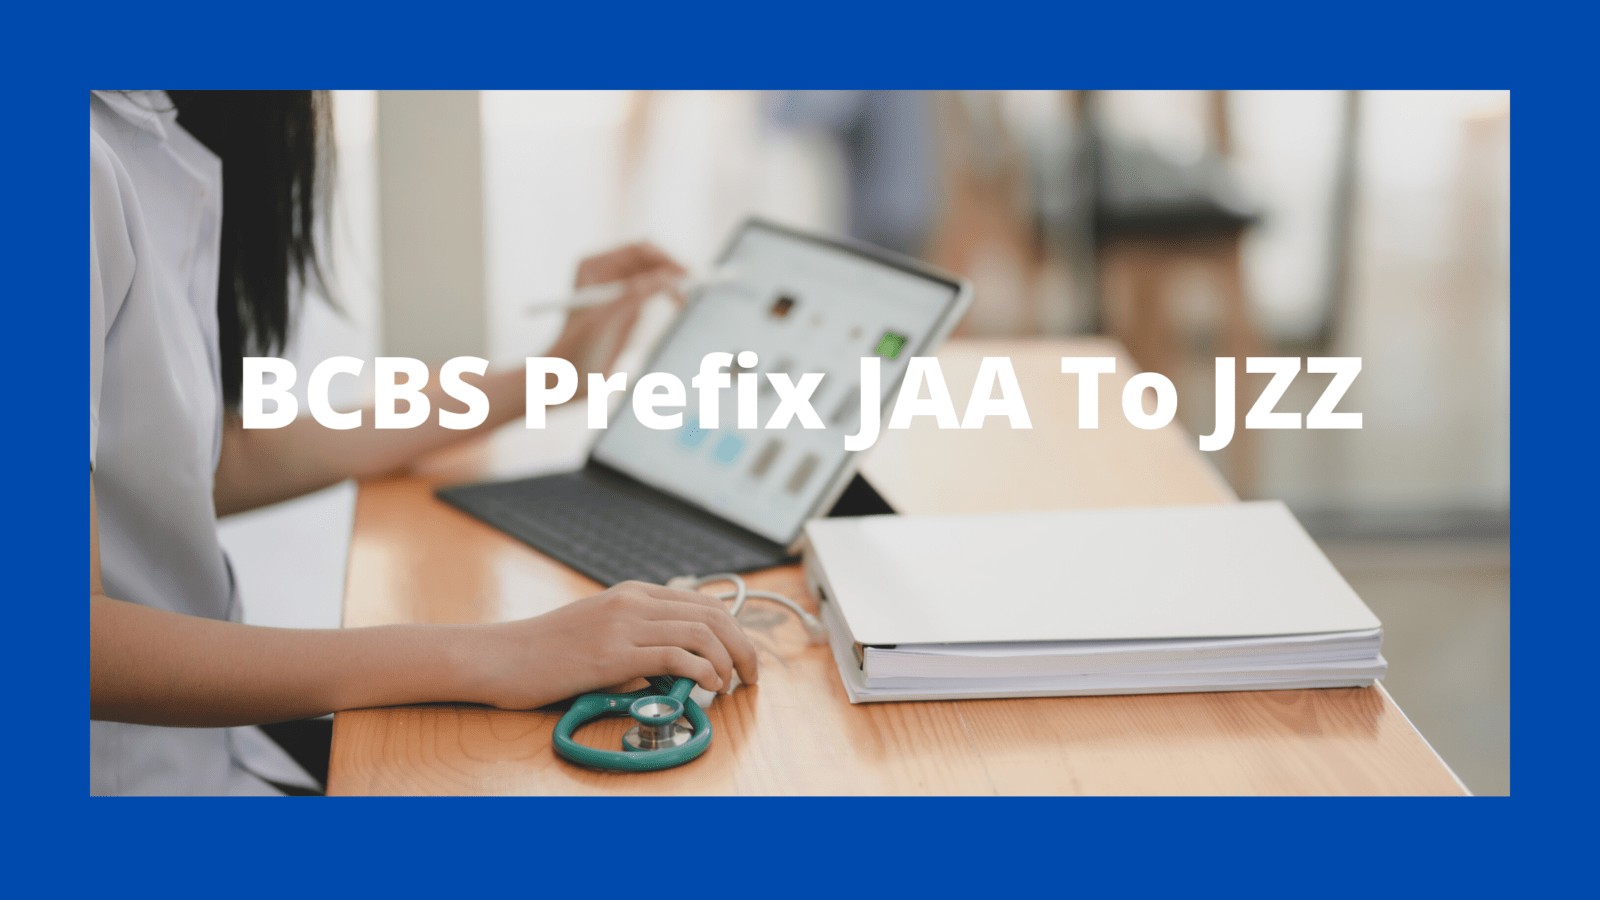 bcbs prefix list jaa to jzz